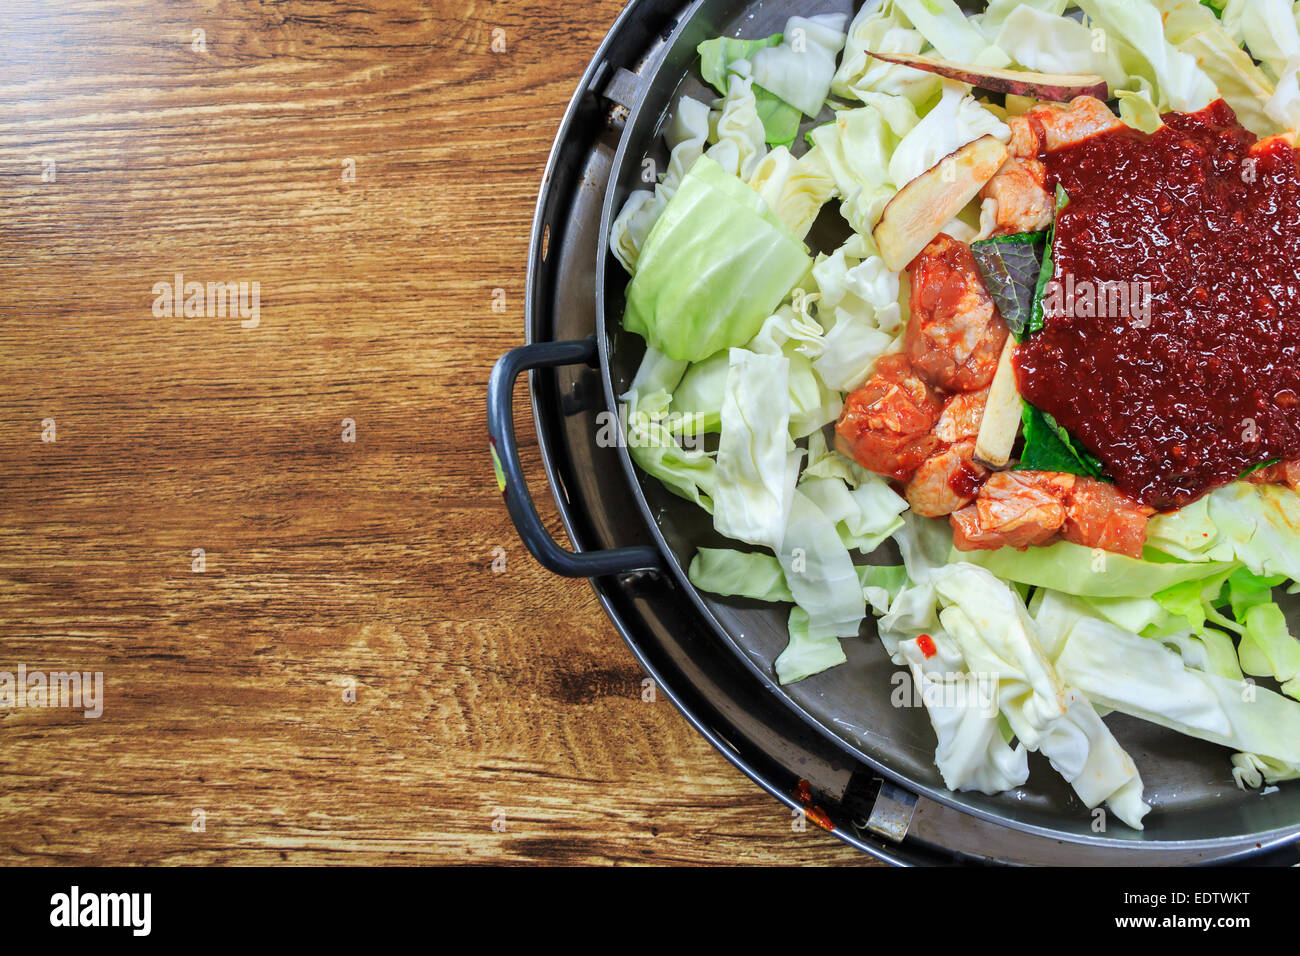 Il condimento di cibo Coreano sul pan comporre di lattuga fresca,pollo,ketchup sul tavolo di legno con la zona vuota sul lato sinistro Foto Stock